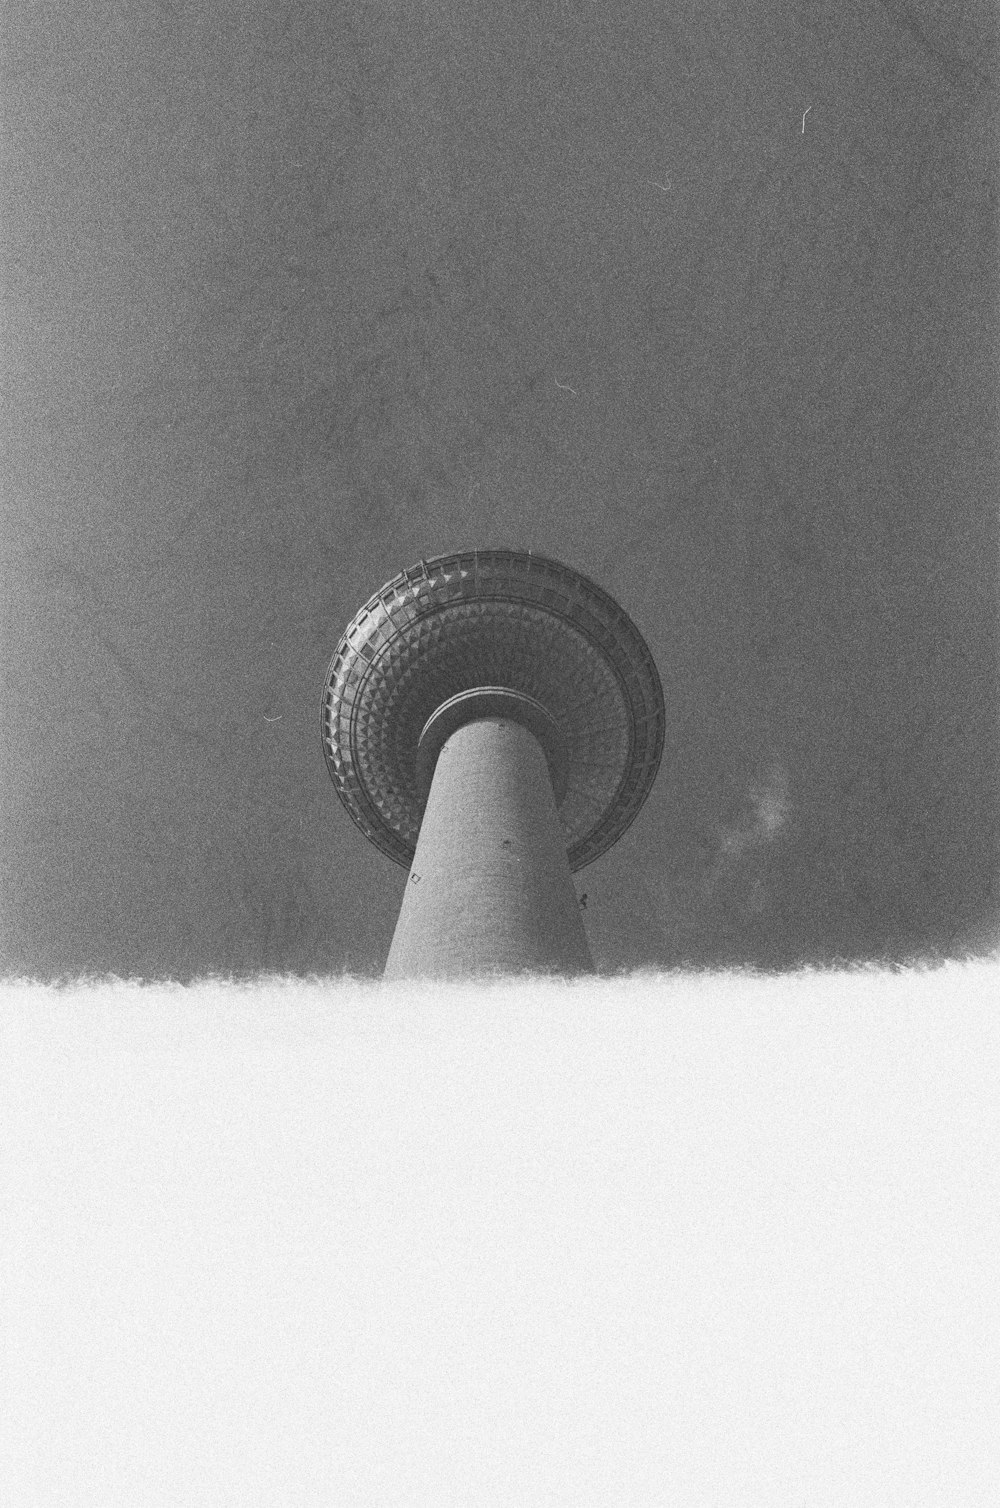 Una foto en blanco y negro de una torre alta